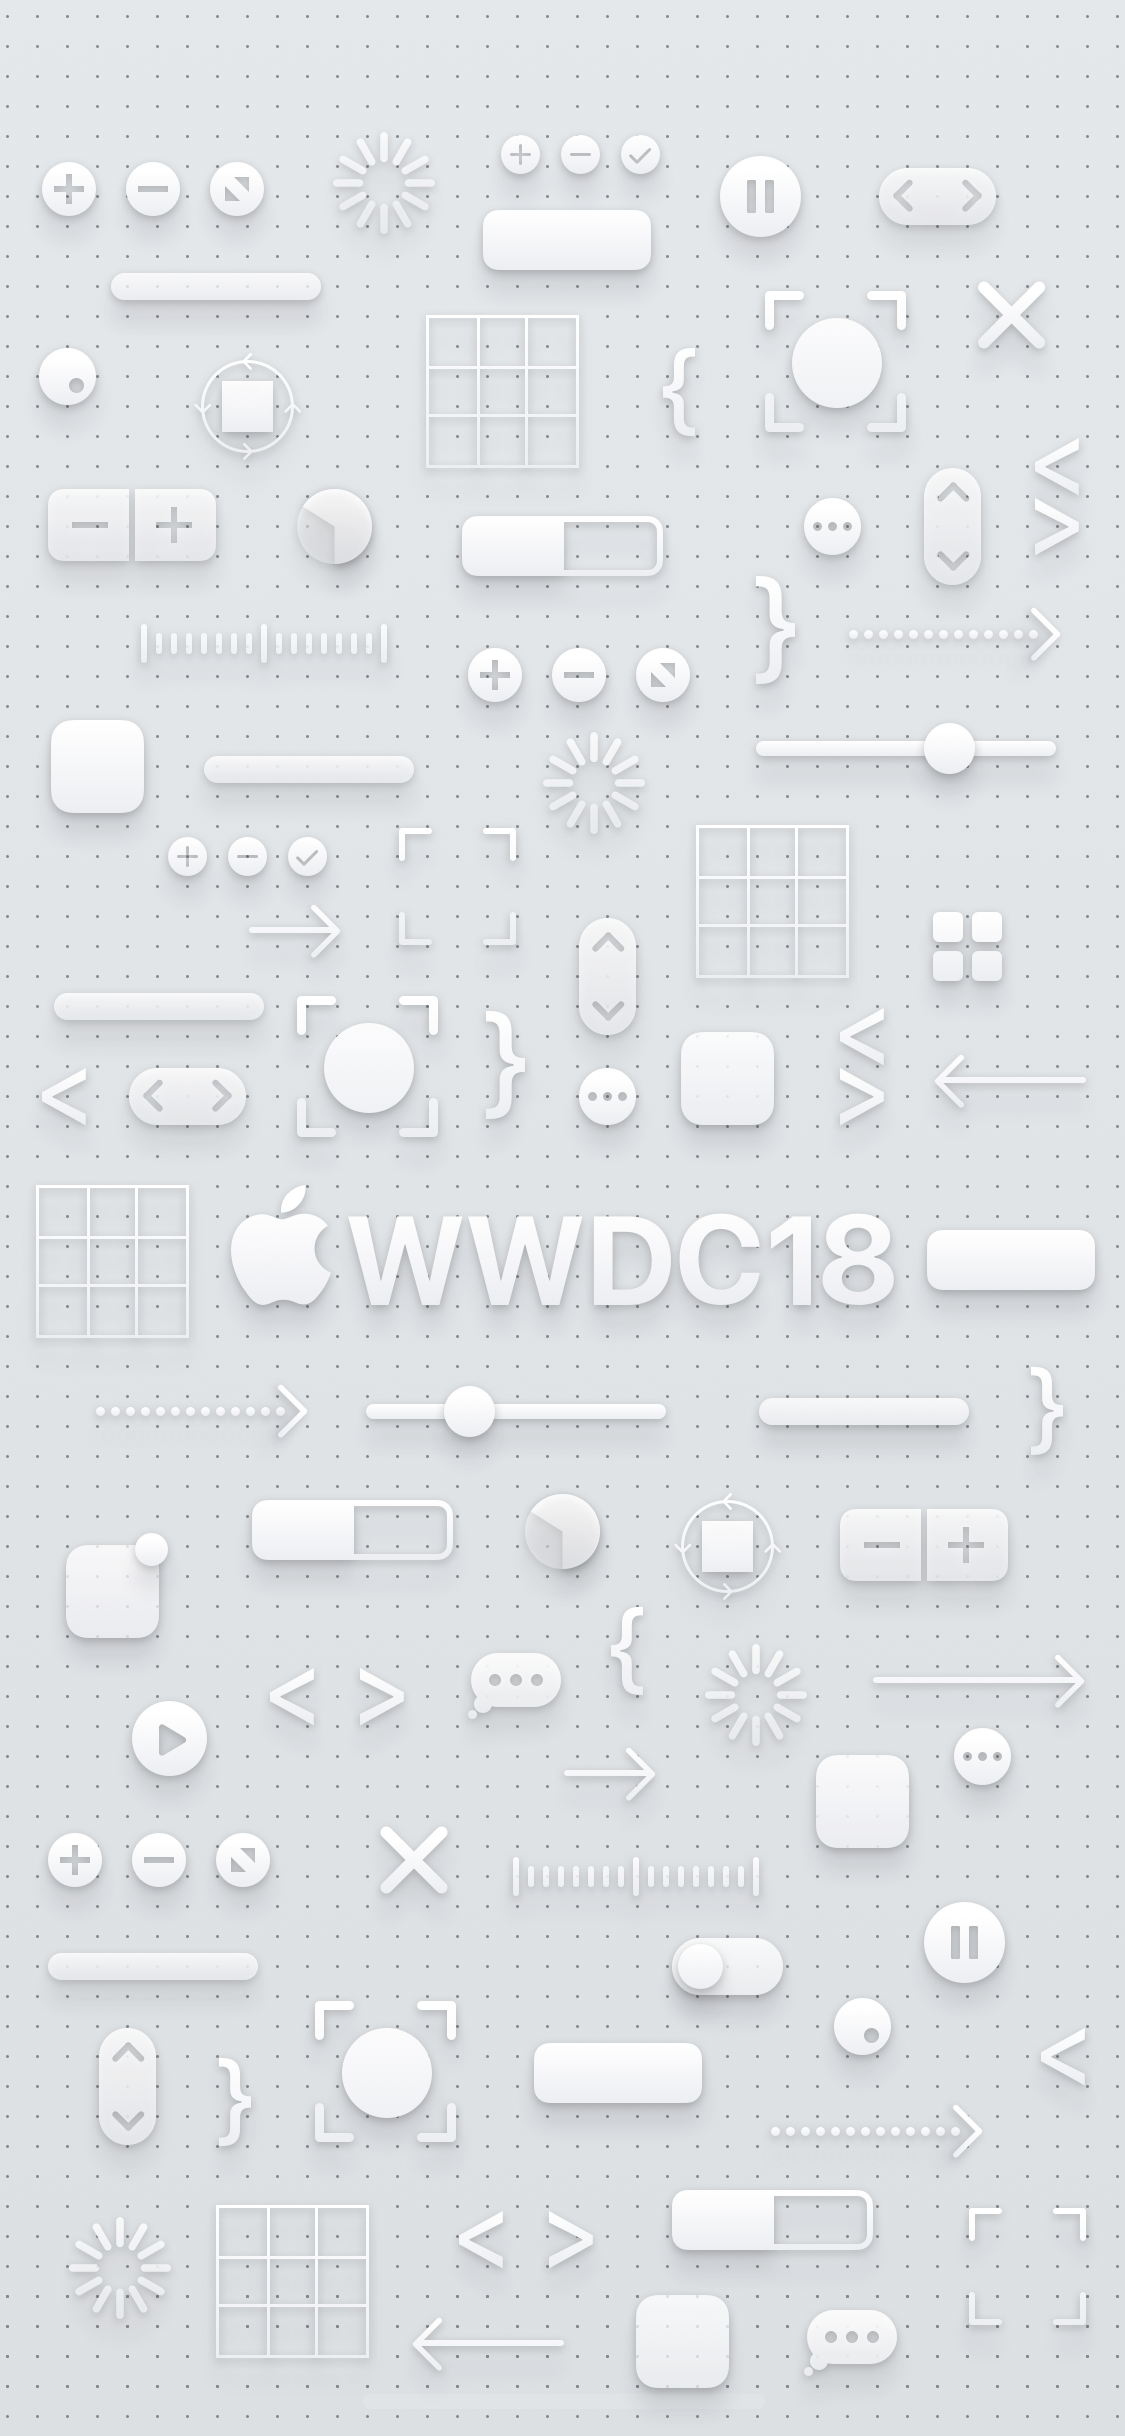 Wwdc 18 立體3d 桌布下載 Mac Iphone Iphone X 桌布都有 蘋果仁 你的科技媒體